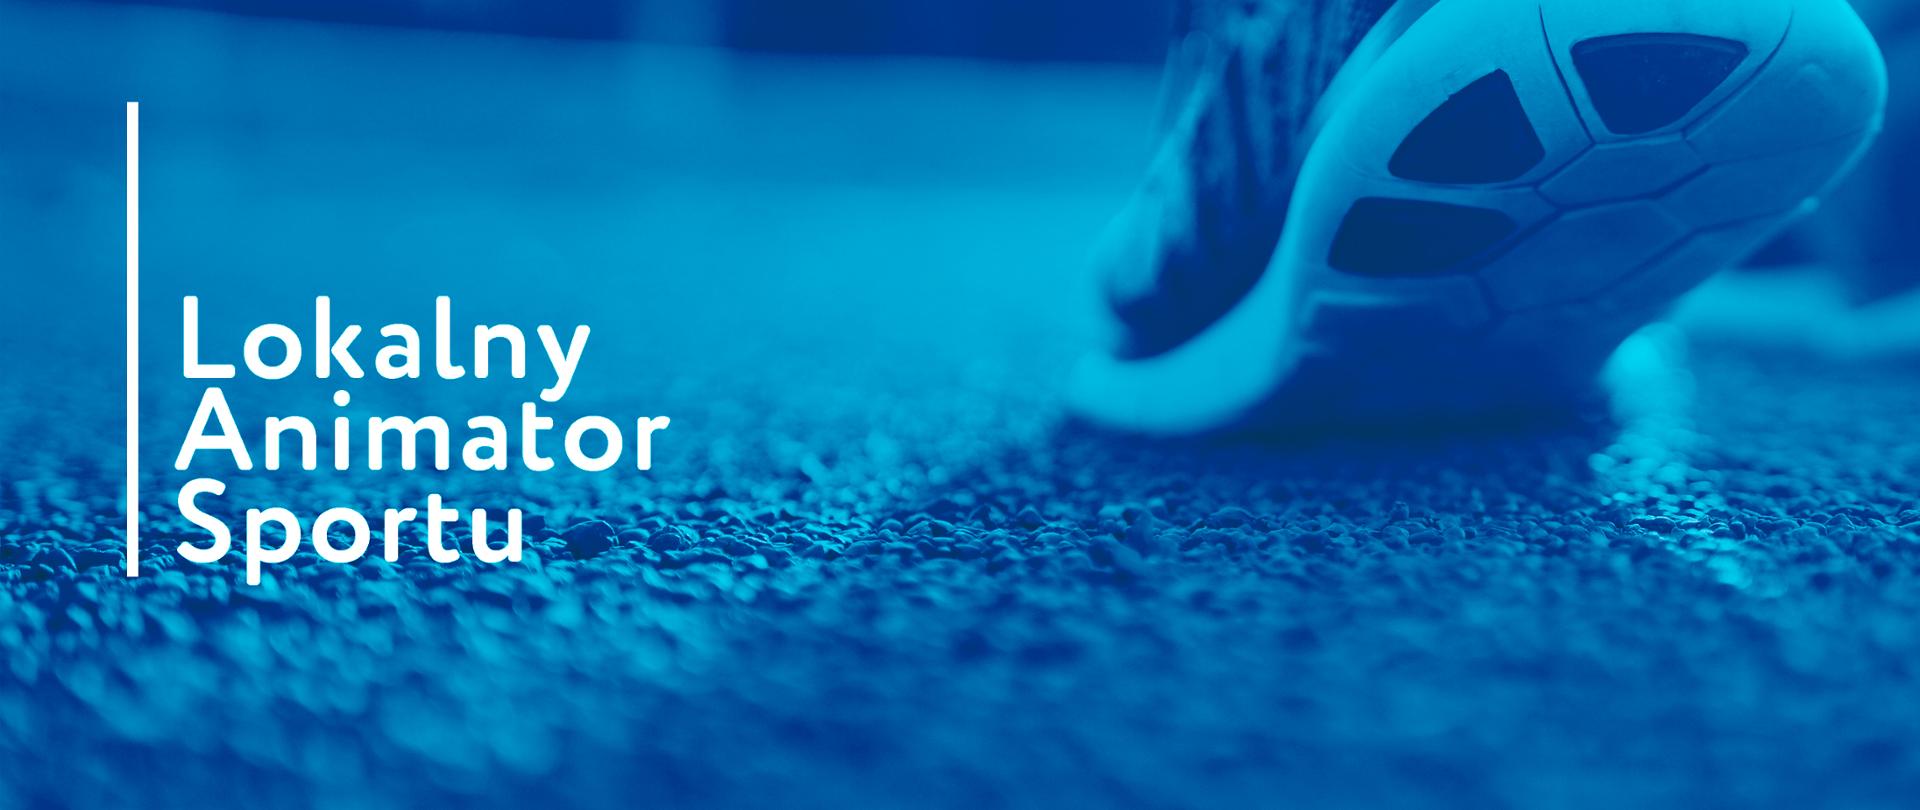 Napis Lokalny Animator Sportu na tle nasyconego niebieskim kolorem zdjęcia, na którym widać zbliżenie na stopę osoby w obuwiu sportowym